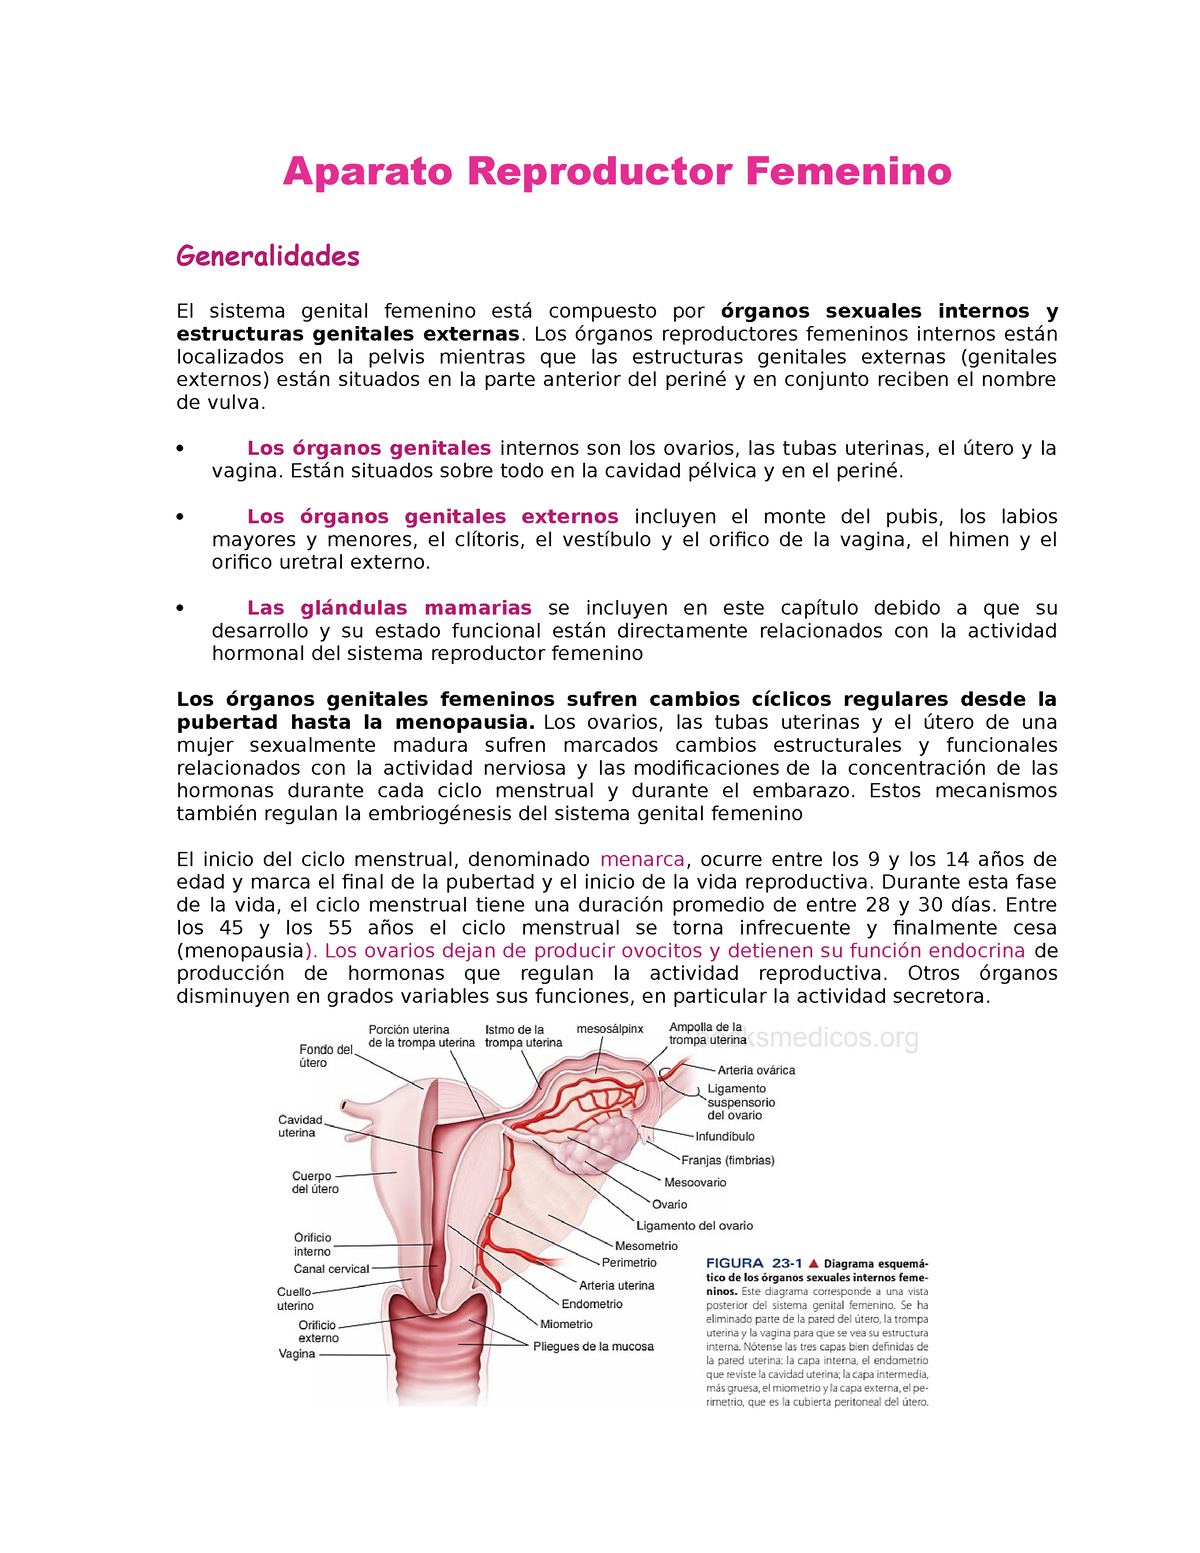 Aparato Reproductor Femenino Aparato Reproductor Femenino Generalidades El Sistema Genital 4657